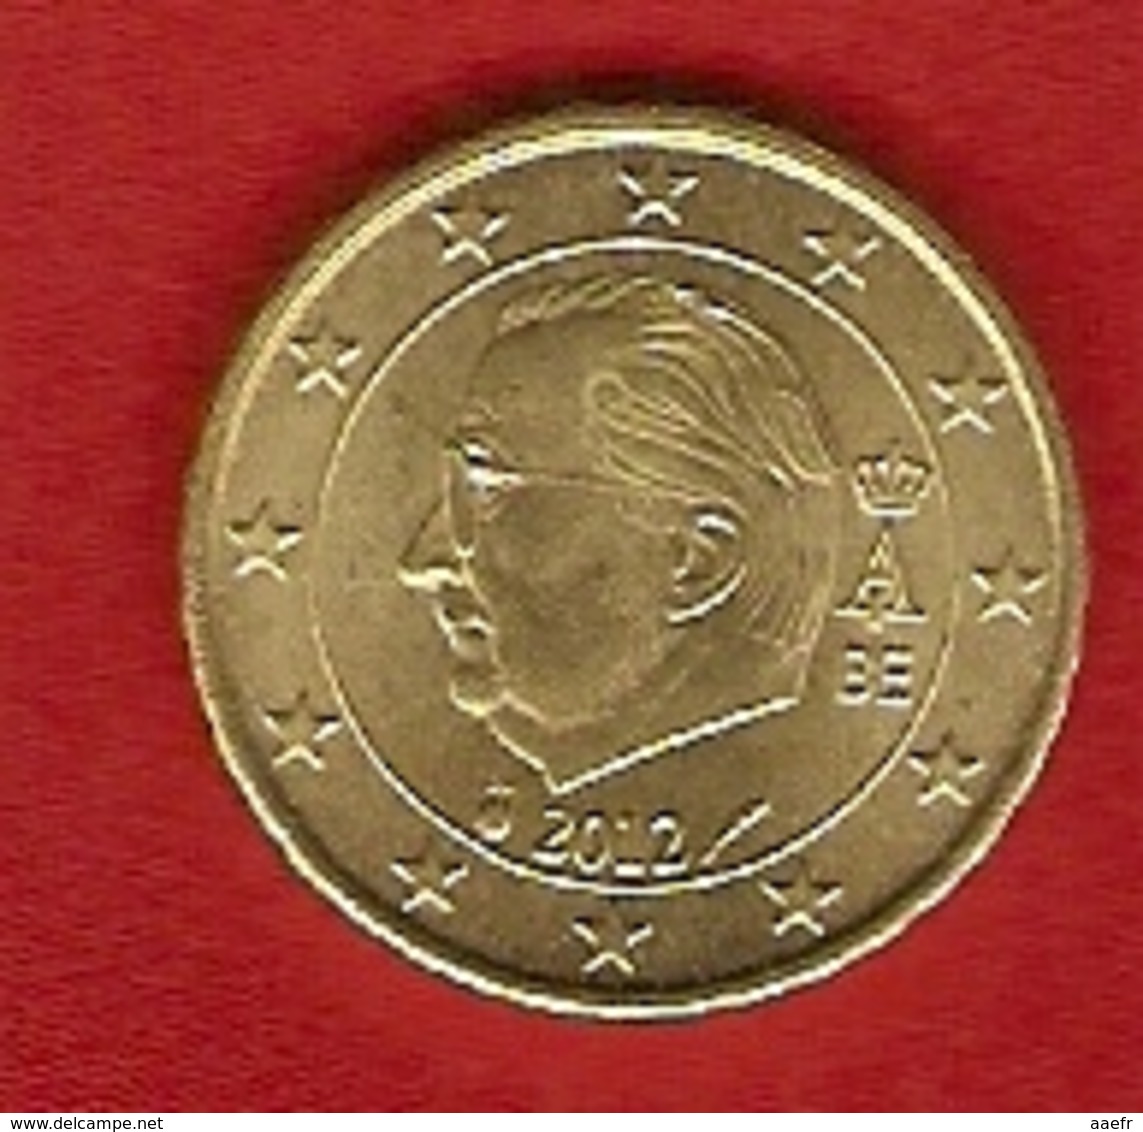 Belgique 2012 - 10 Cents - Albert II - Belgium